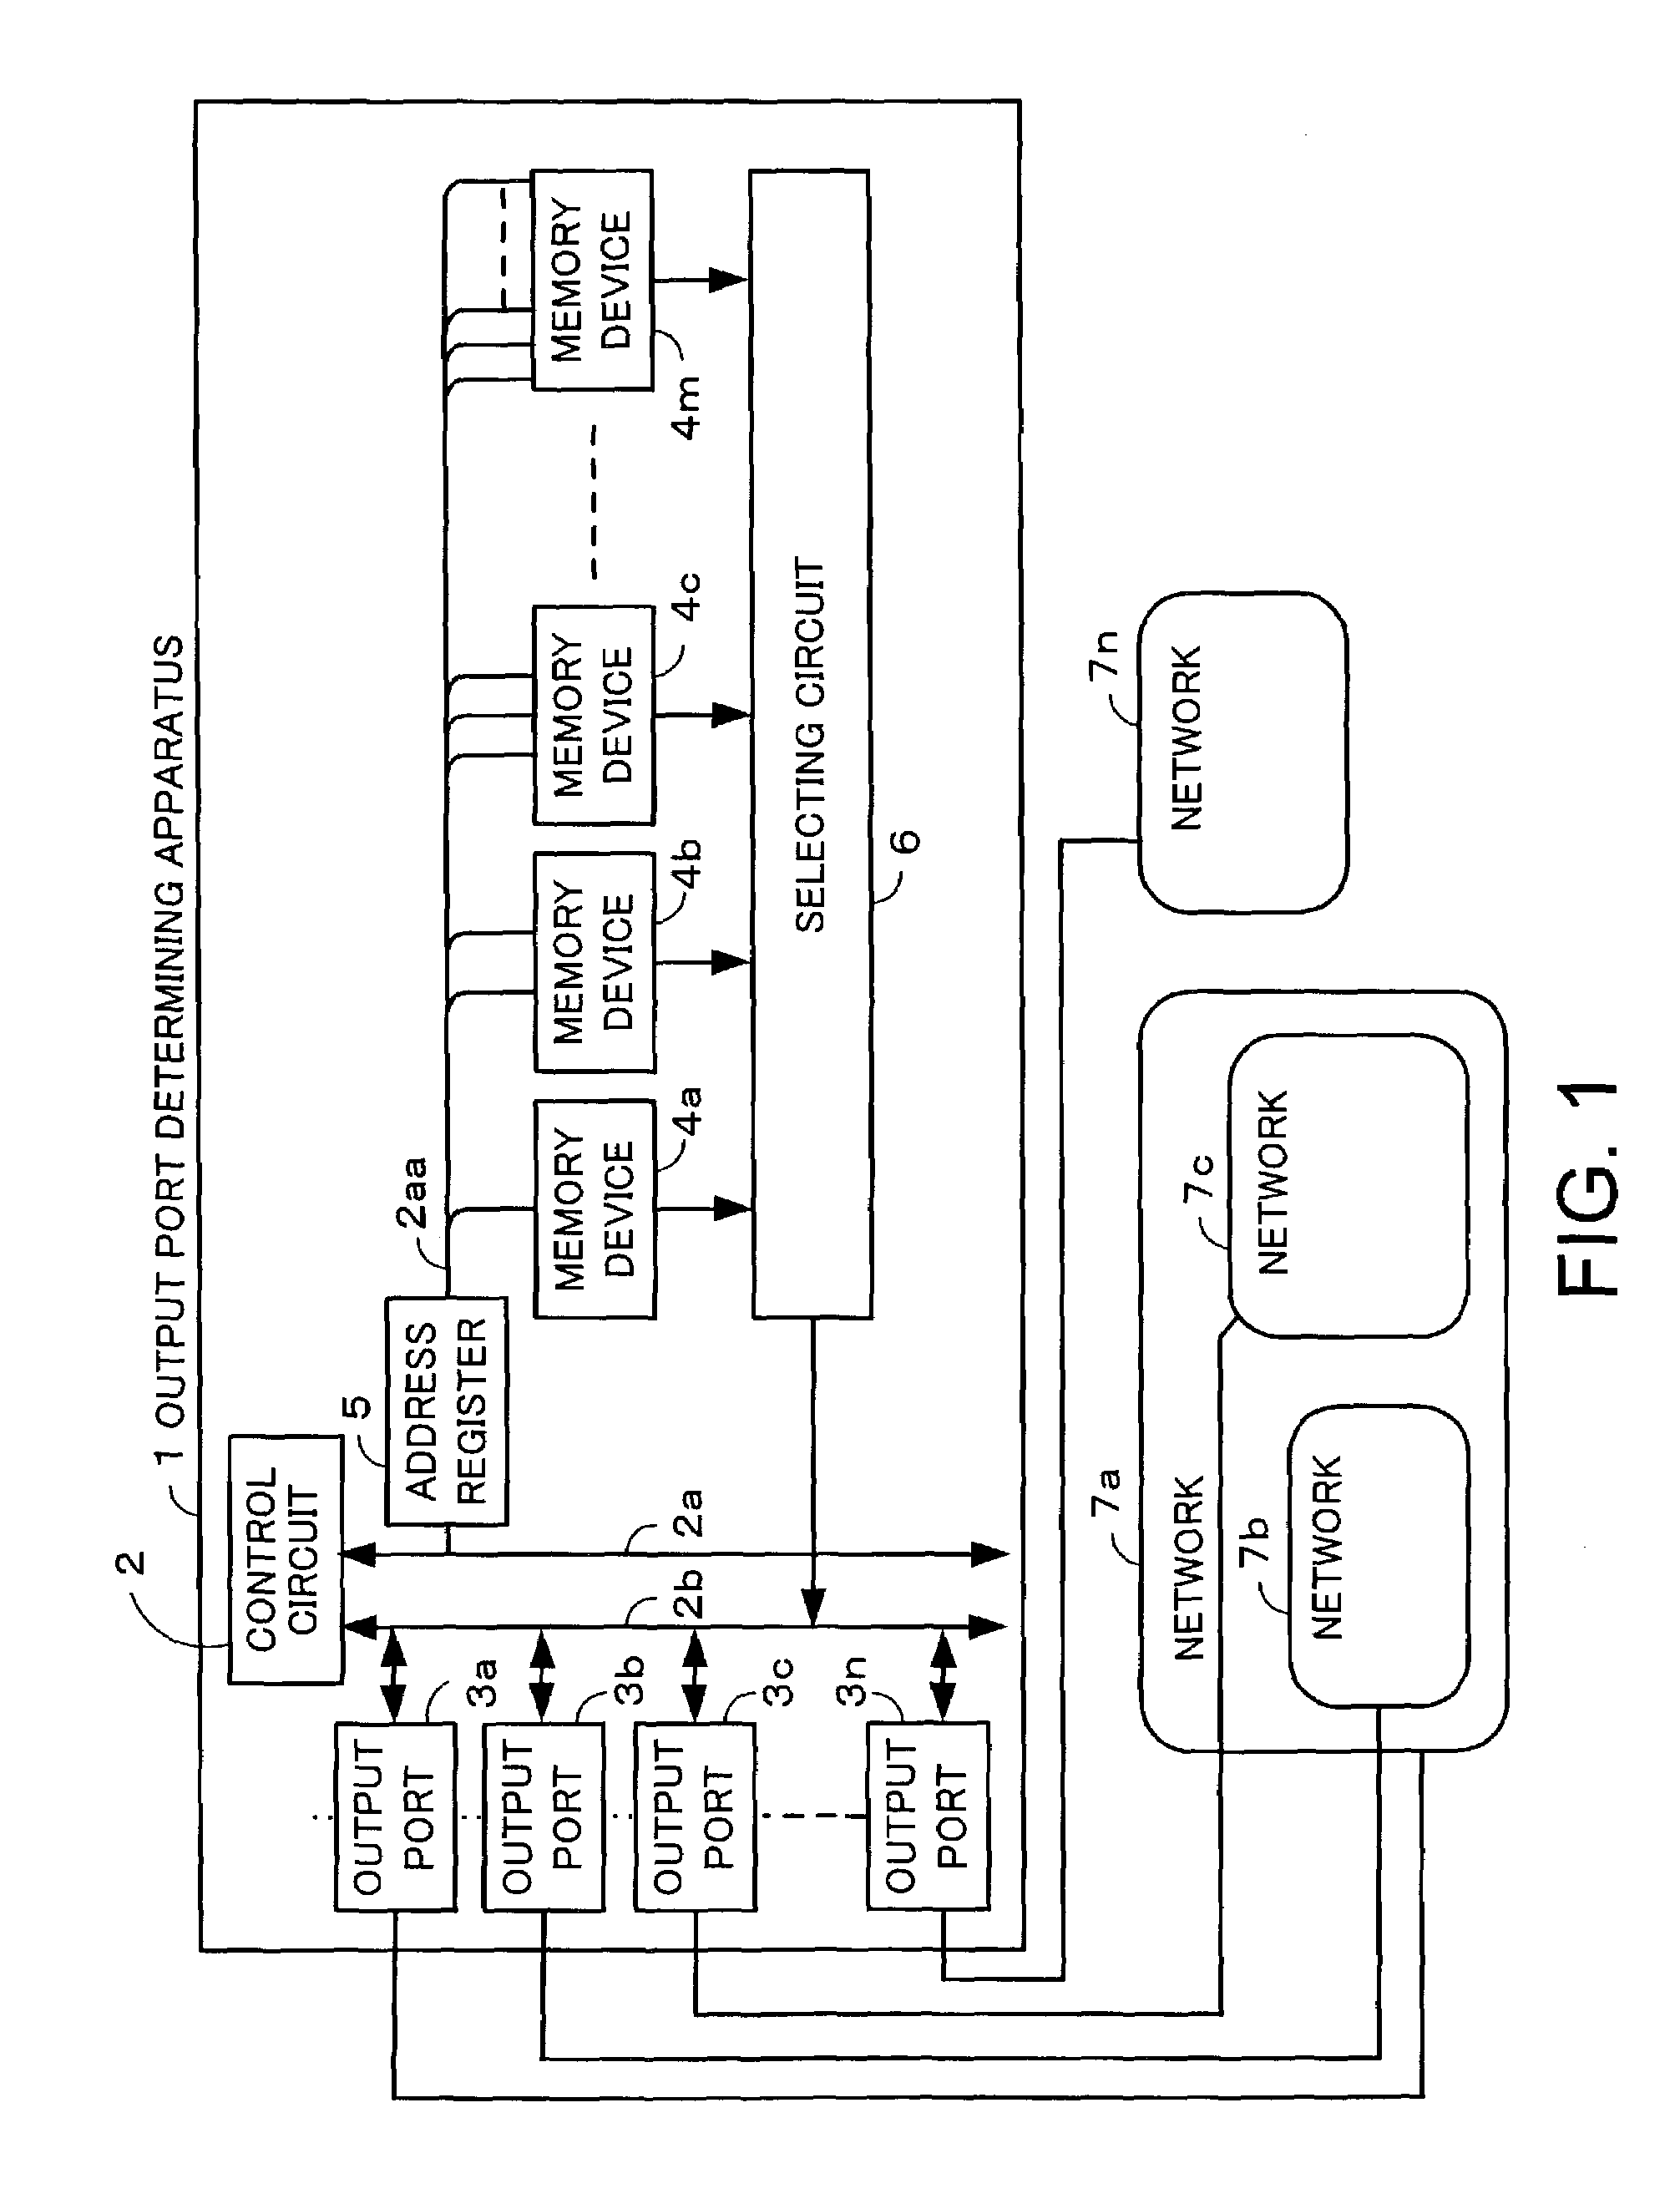 Output port determining apparatus